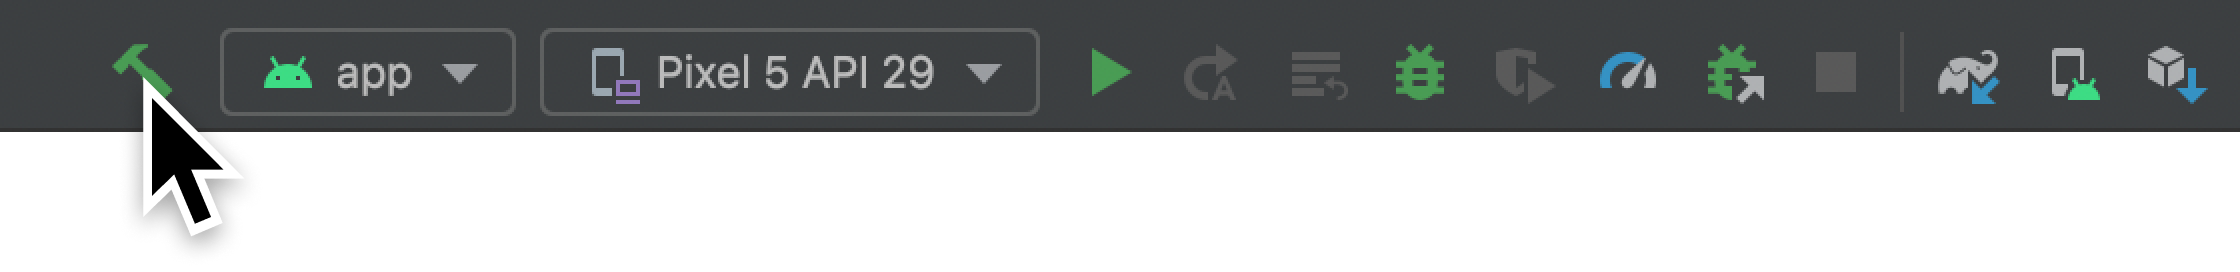 Botón Build en la barra de herramientas